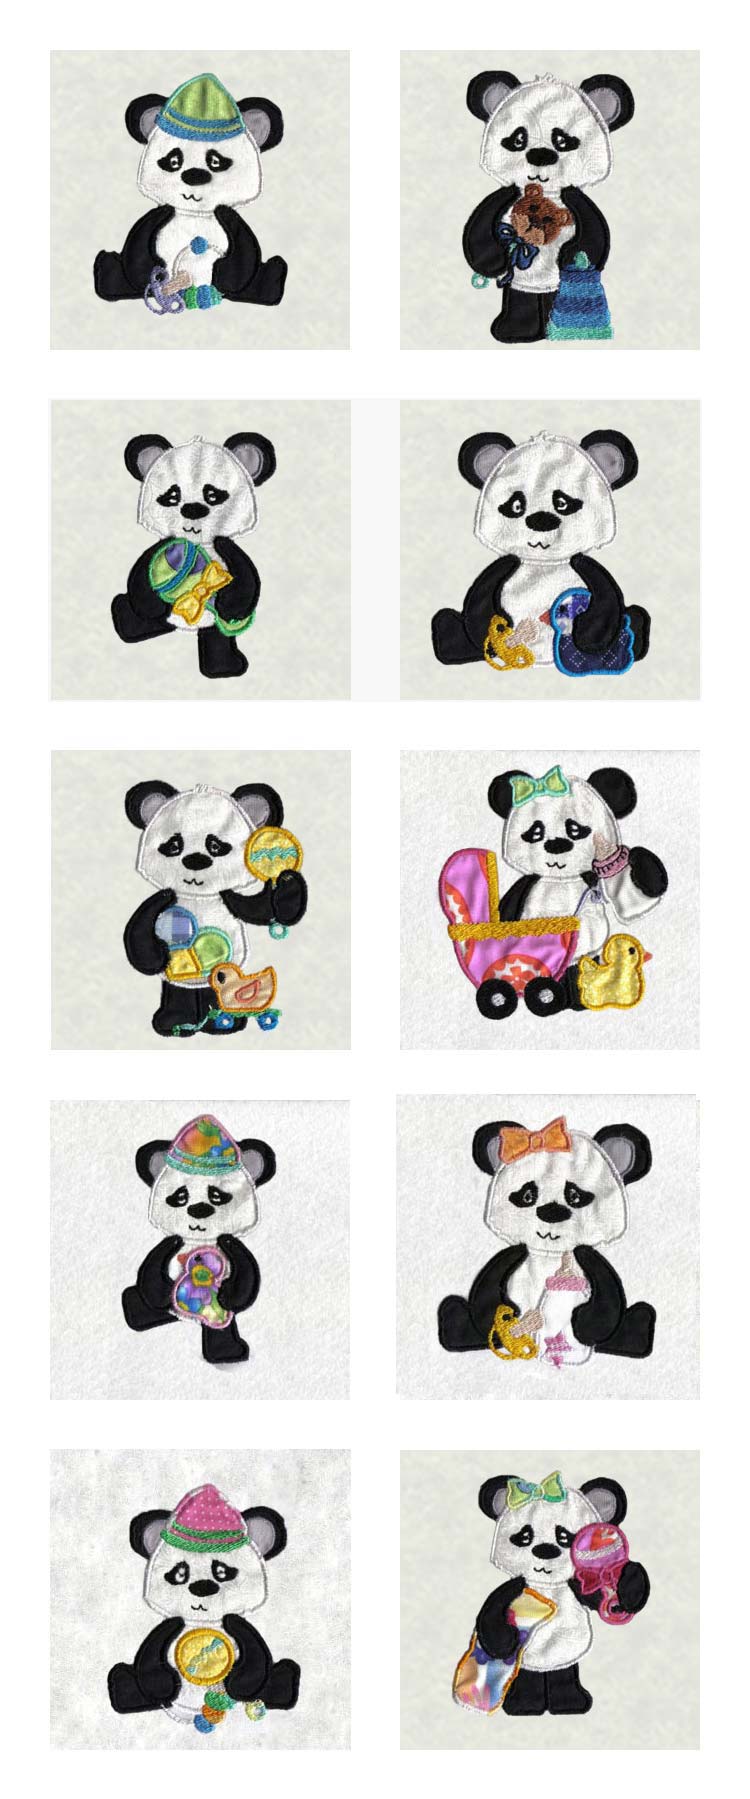 Applique Pandas Embroidery Machine Design Details